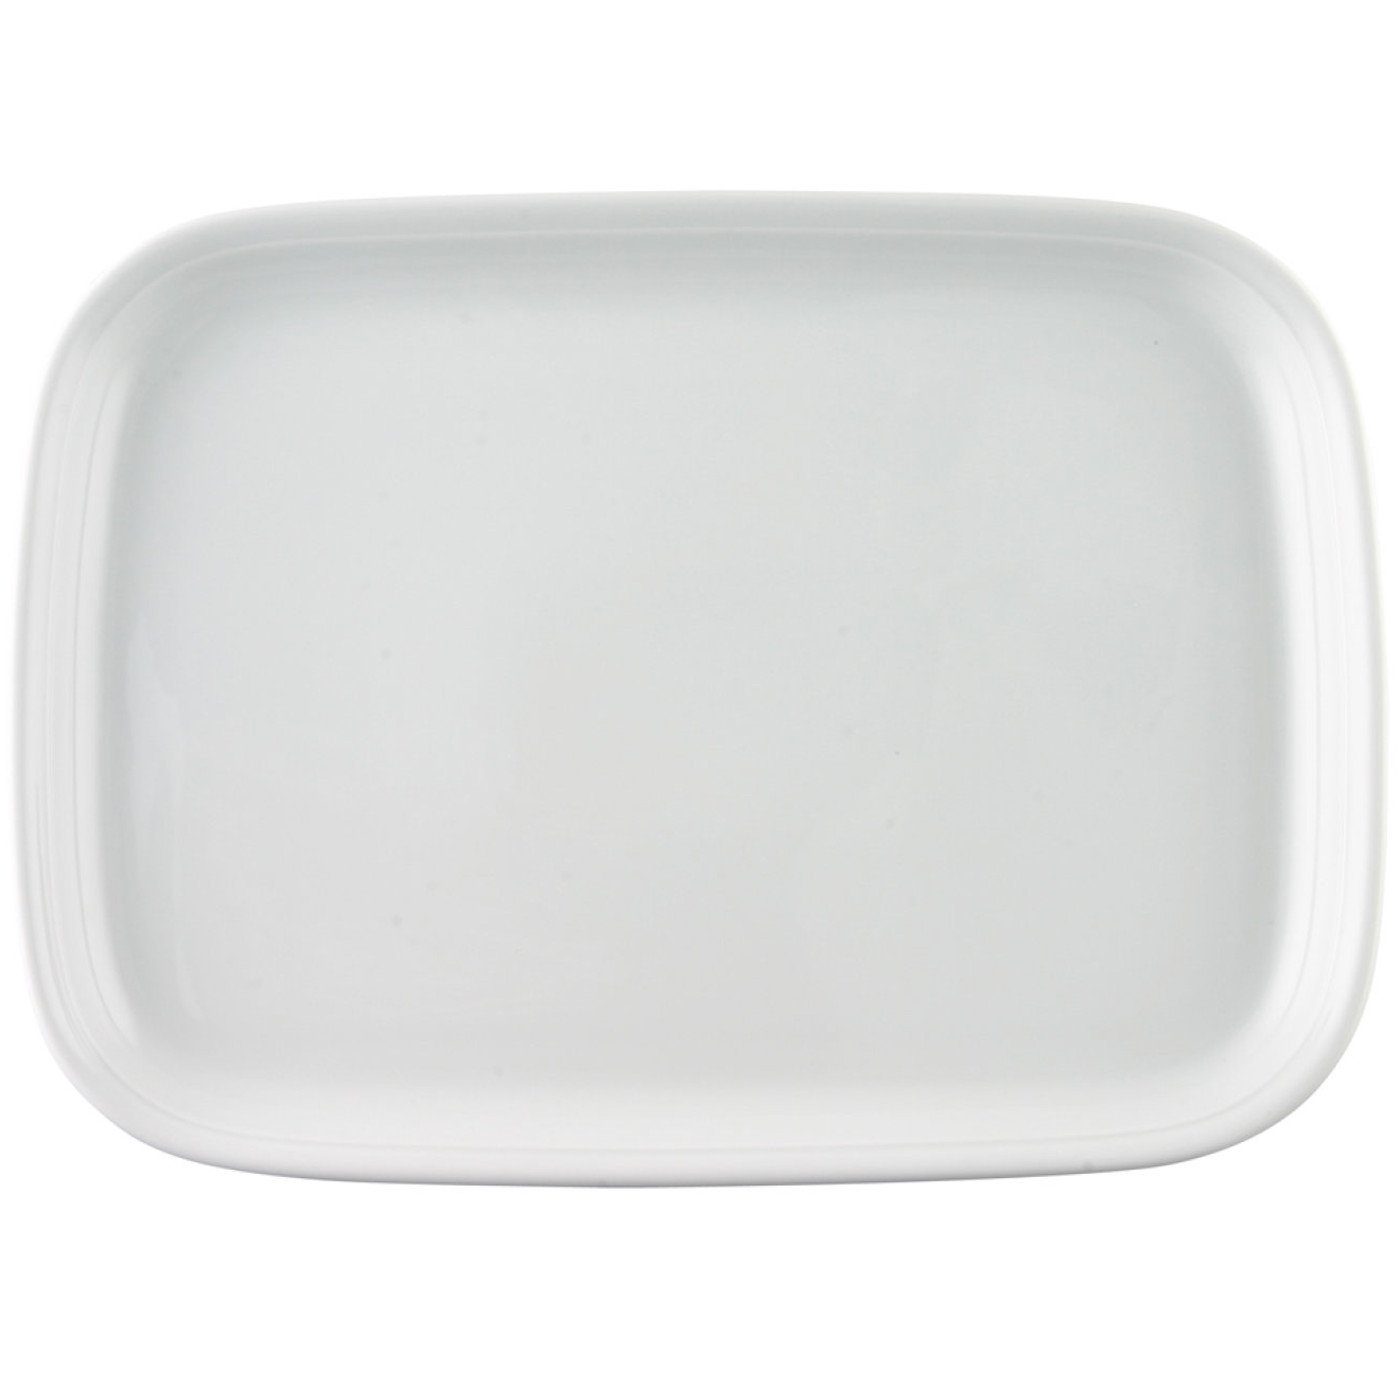 Thomas Porzellan Servierplatte Trend Weiß Platte 38 cm, Porzellan, (1-tlg)